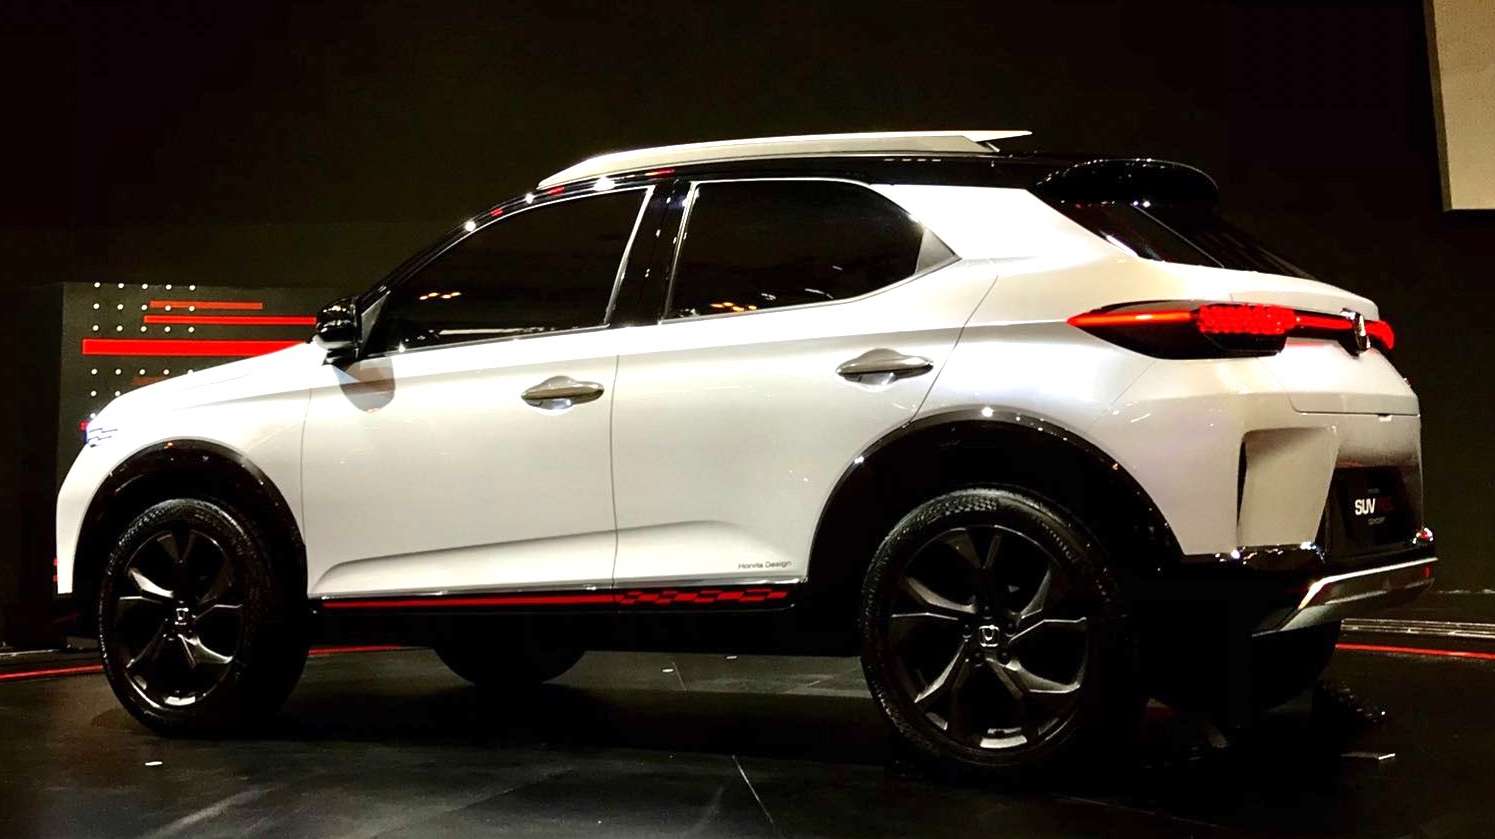 O Honda ZR-V será o próximo SUV da marca. O veículo deve ser lançado em 2023 como um substituto do Honda WR-V, veja os detalhes